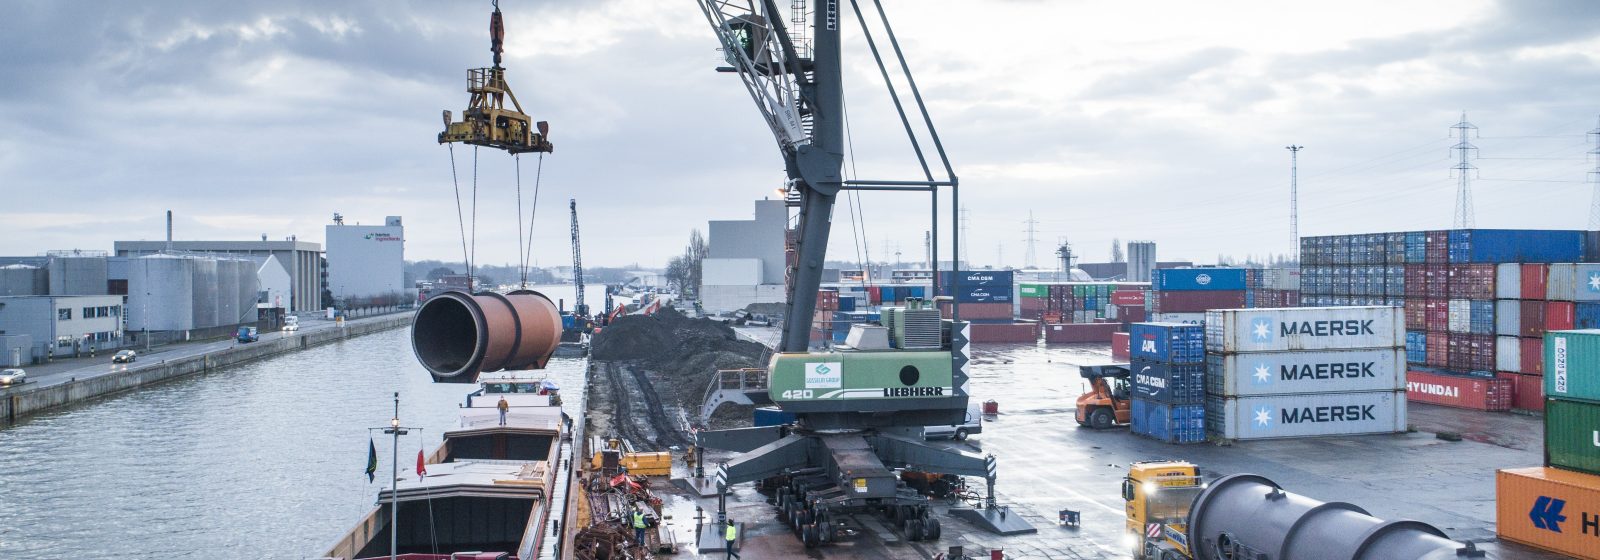 Gosselin Group verscheept special cargo per binnenschip op terminal in Deurne